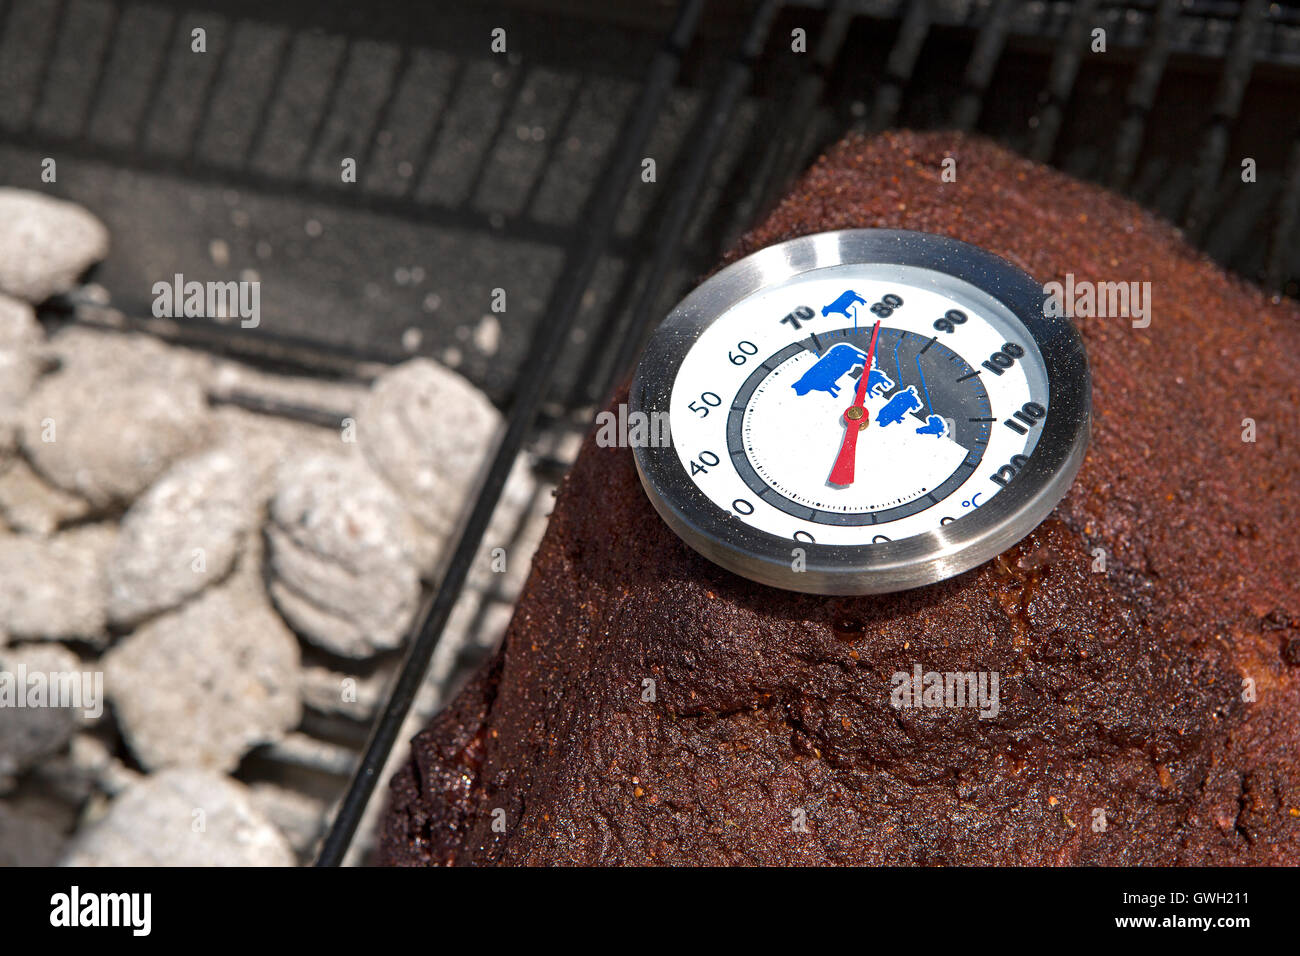 Nahaufnahme eines Thermometers auf Schweinefleisch, BBQ grill Stockfoto